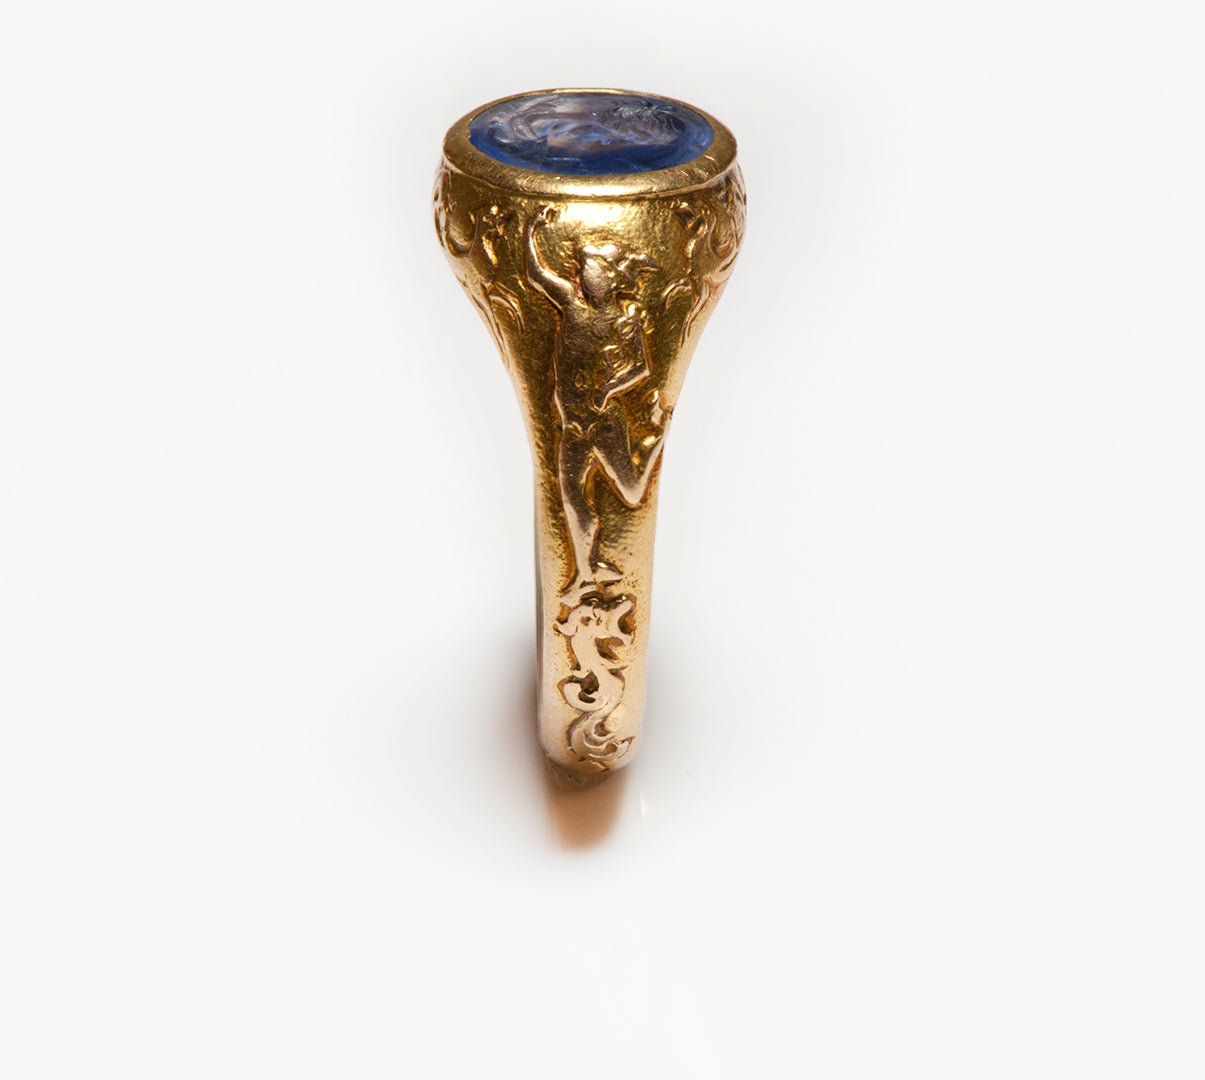 Antique Gold Ceylon Sapphire Intaglio Men's Ring